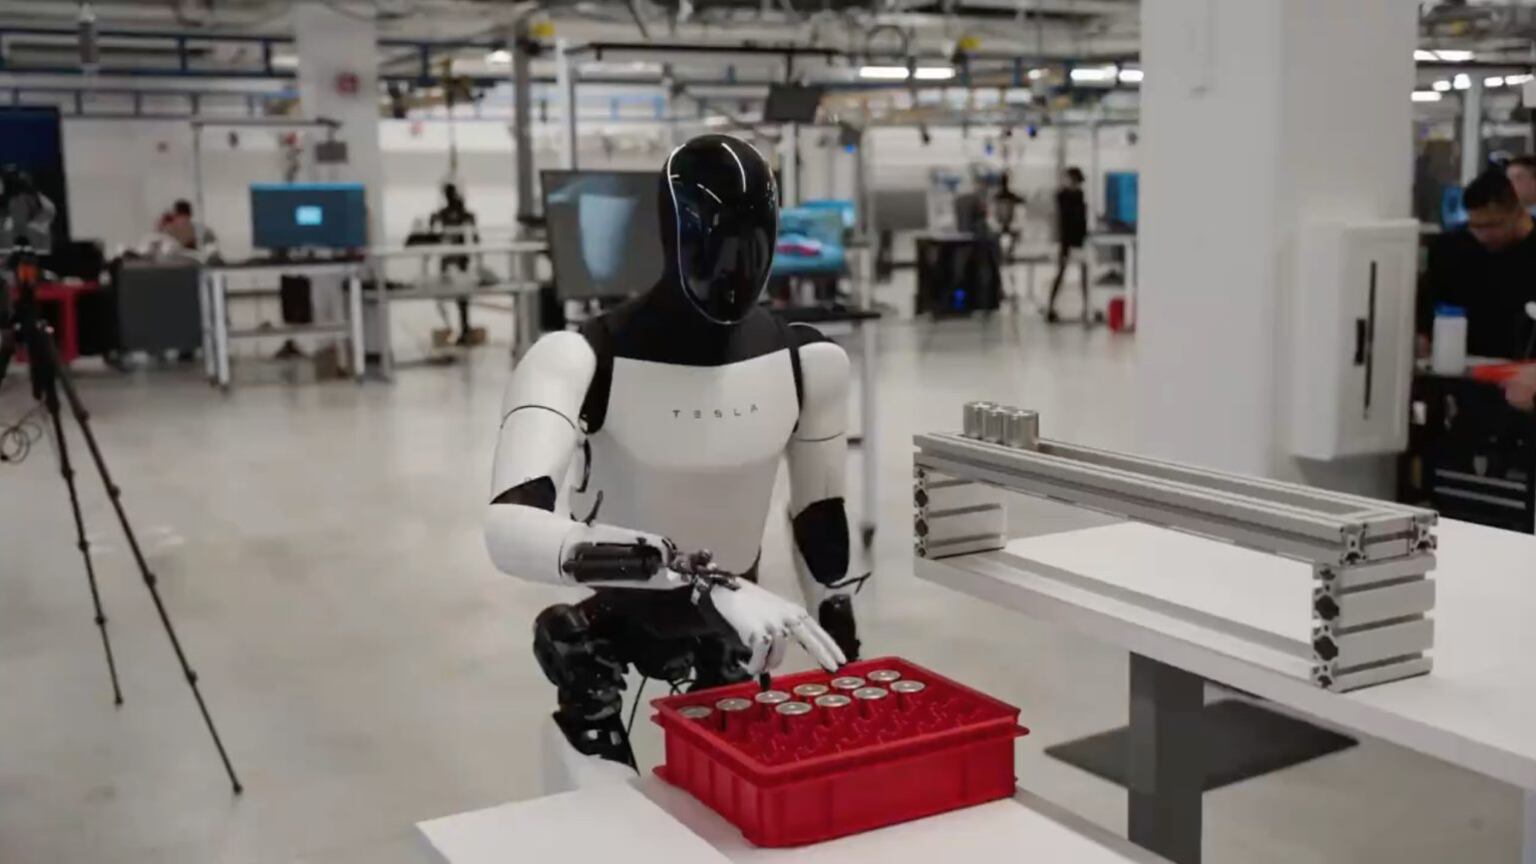 El robot Optimus se muestra realizando labores de fábrica. Tesla y Elon Musk alaban los avances mientras recortan a su personal en la automotriz.